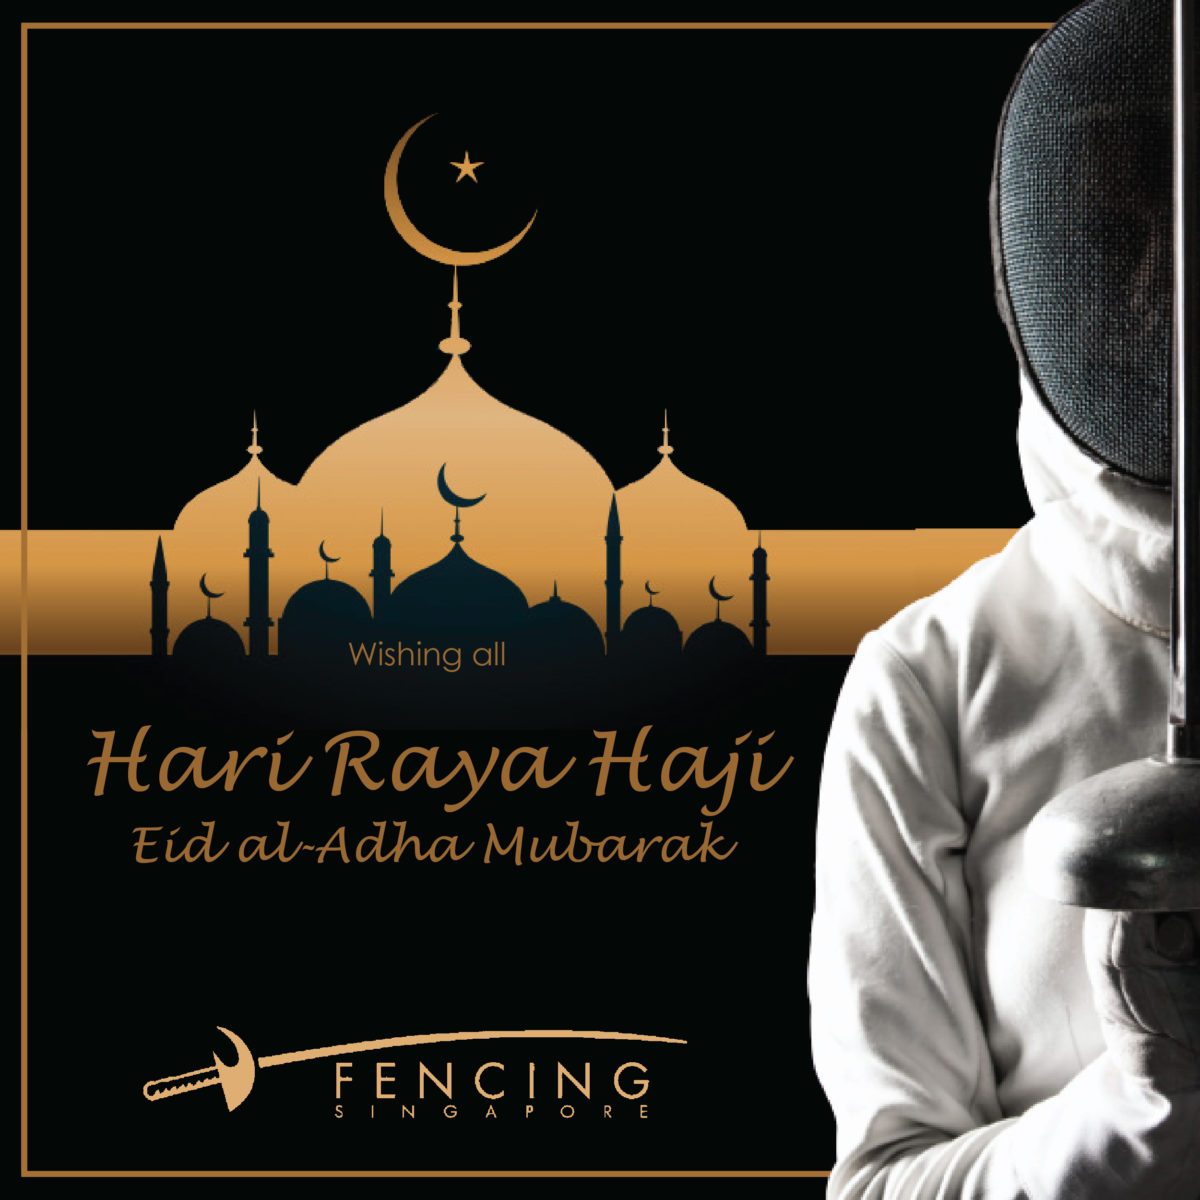 Selamat Hari Raya Haji Fencing Singapore